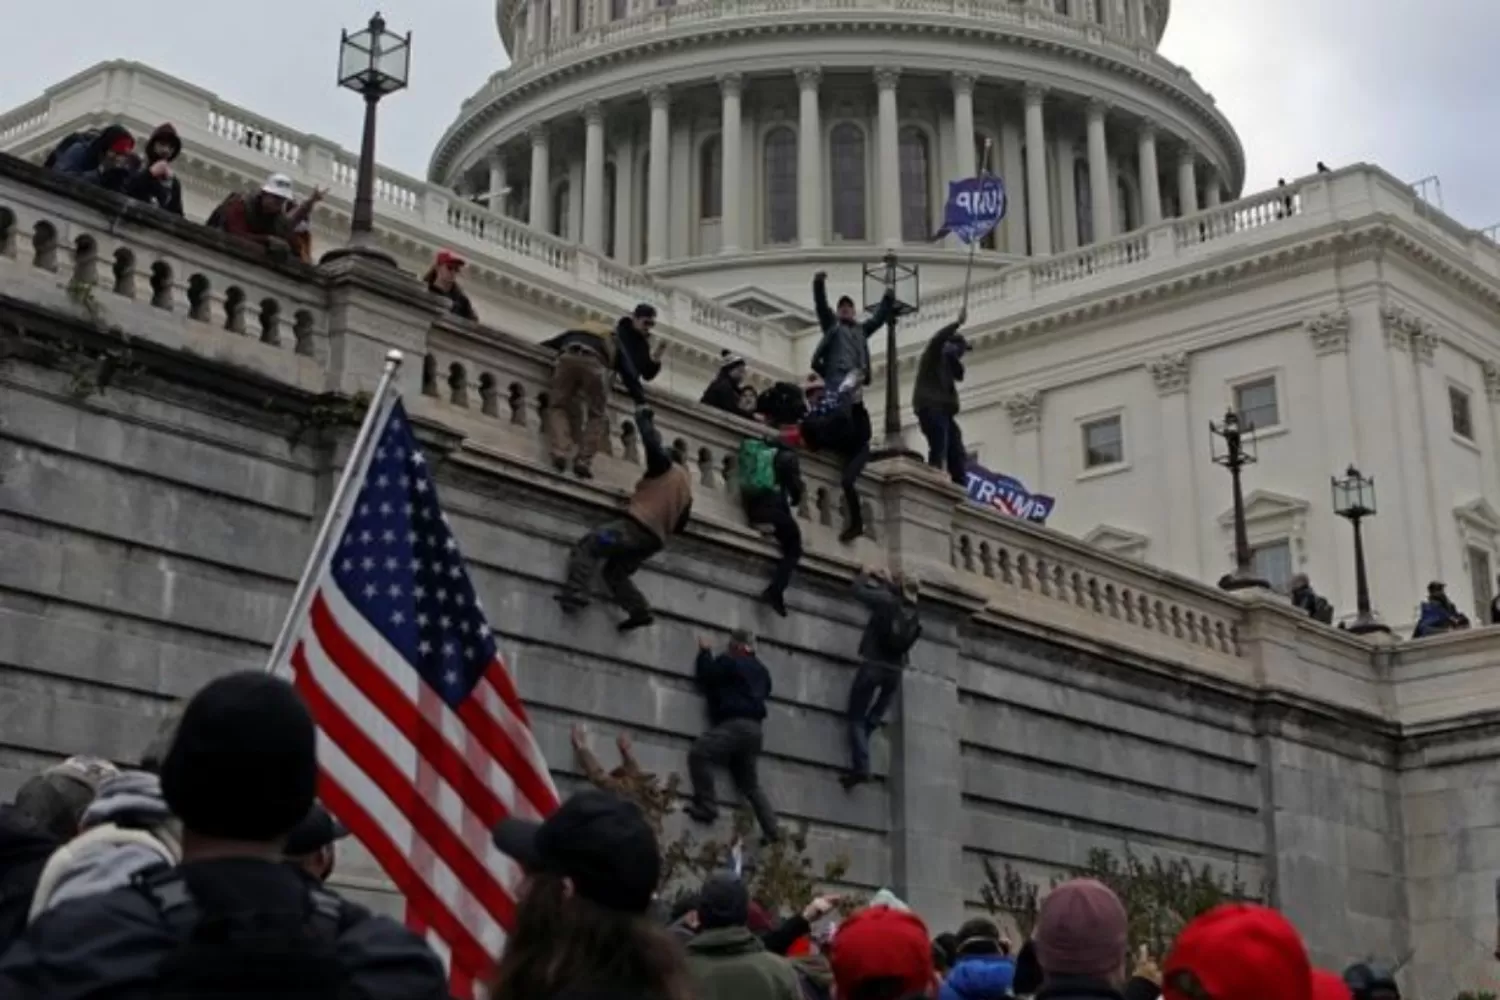 INVADIENDO EL CAPITOLIO. Los partidarios de Trump irrumpieron violentamente y ocuparon el edificio del Congreso perturbando su funcionamiento el pasado 6 de enero. REUTERS